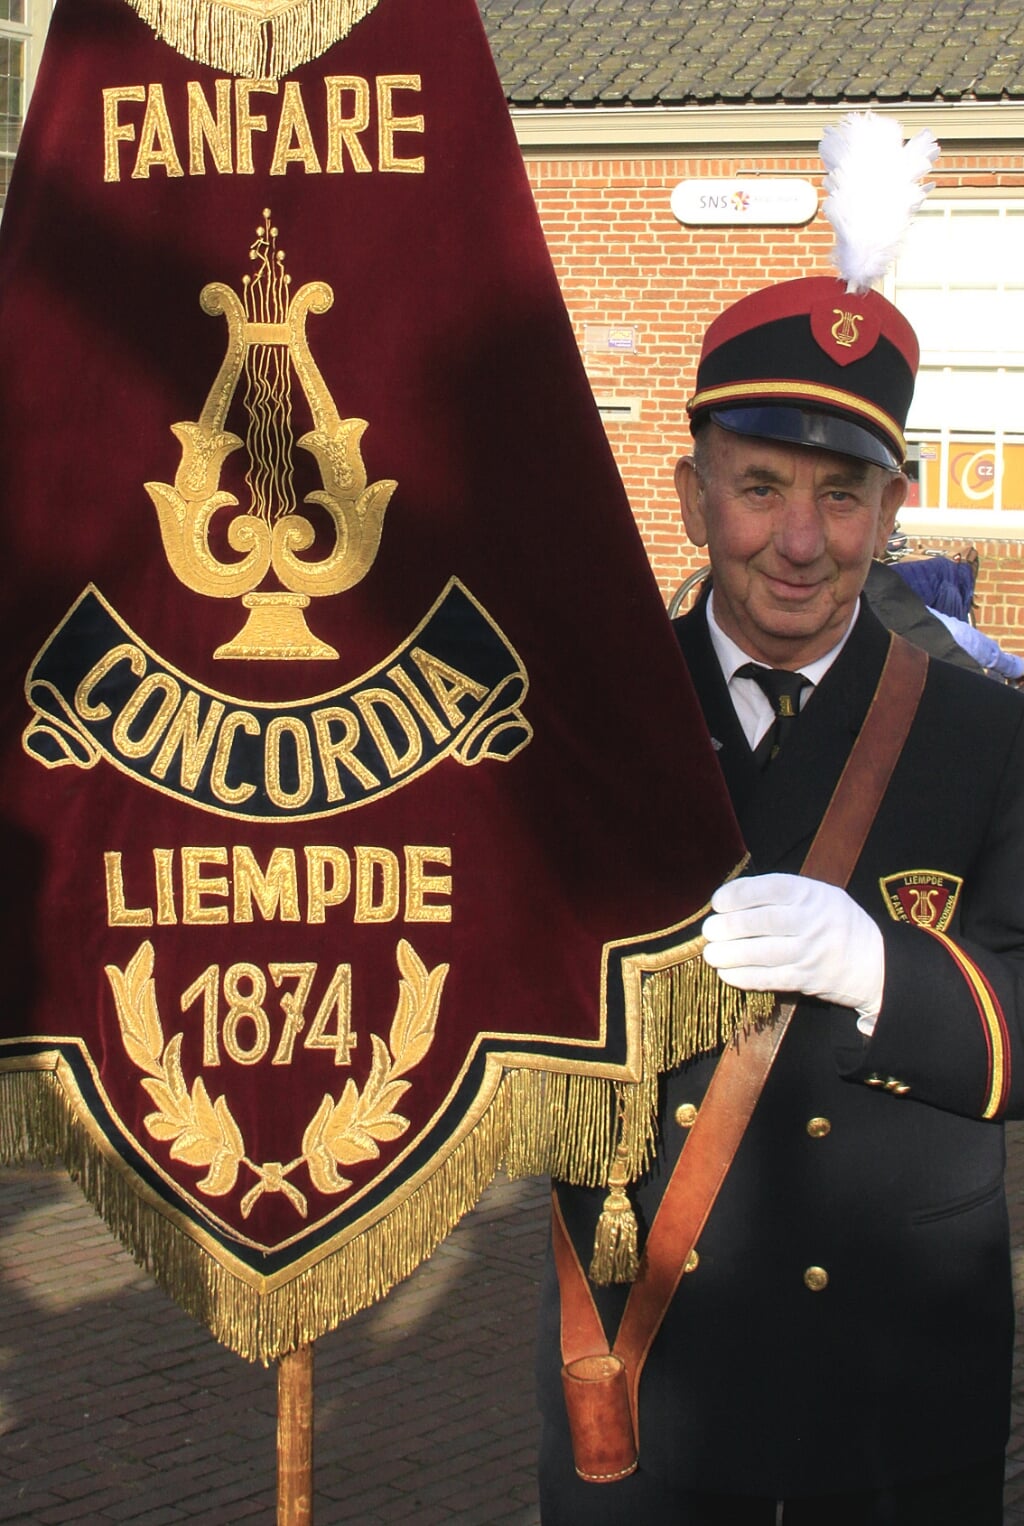 Piet Smulders werd in 2009 door fanfare Concordia in het zonnetje gezet omdat hij veertig jaar het vaandel droeg. 